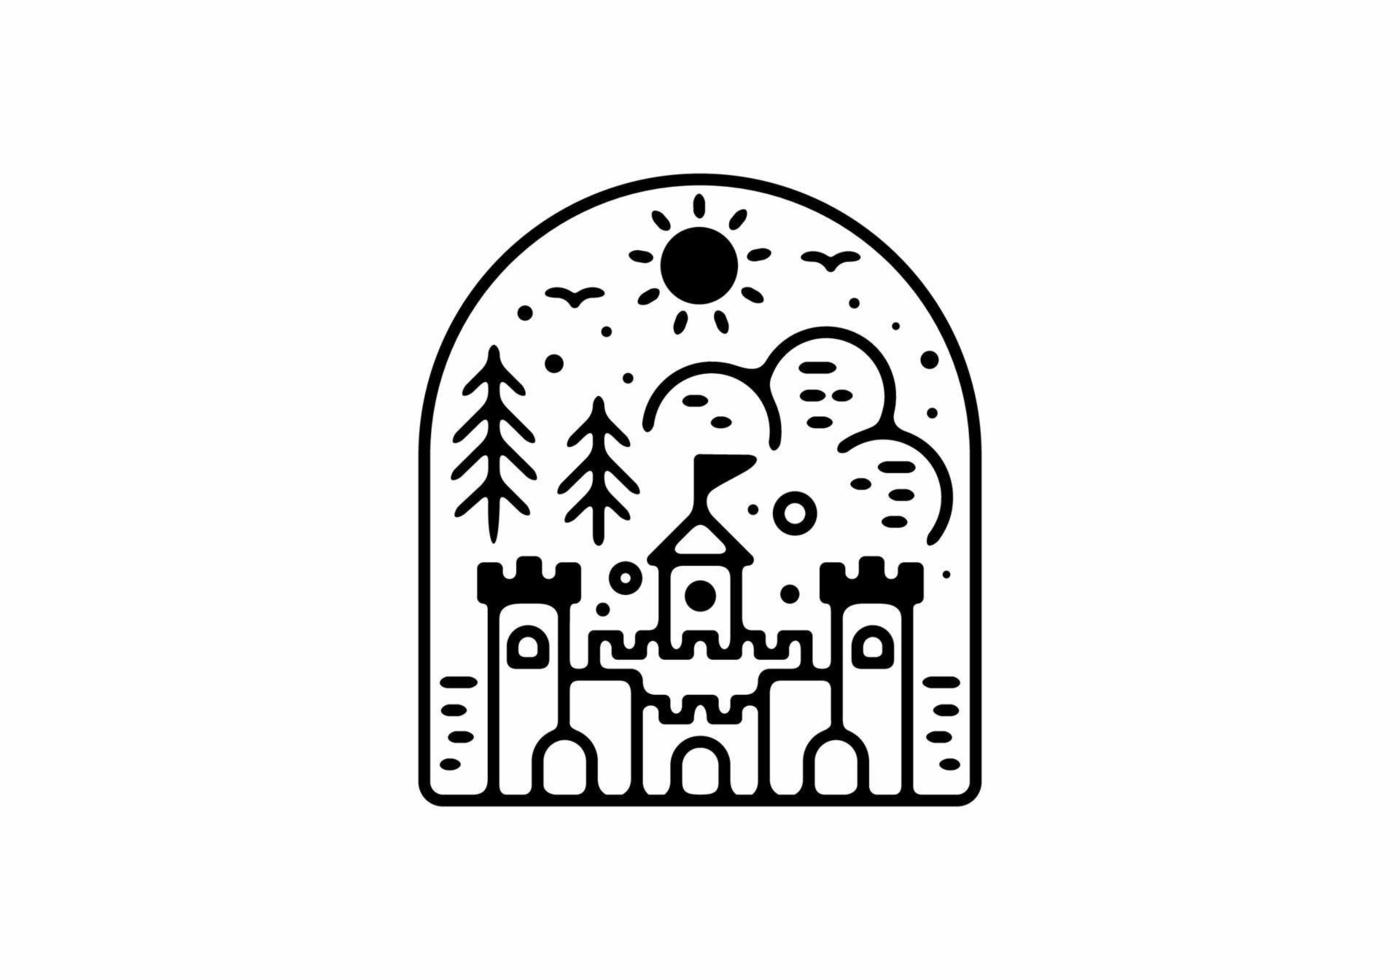 Black line art illustration of castle badge vector